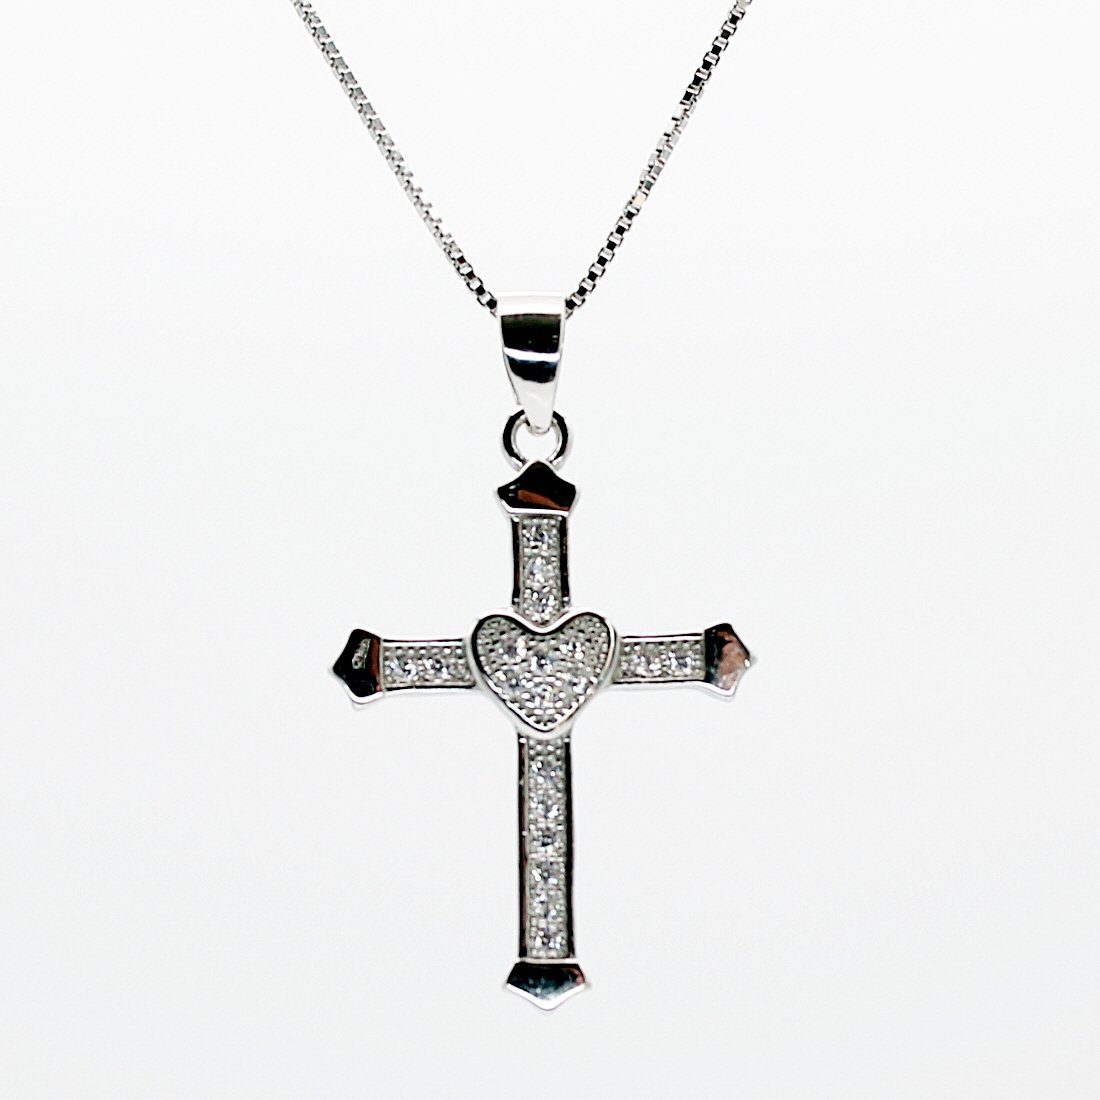 ELLAWIL Kreuzkette Damen Halskette mit Kreuzanhänger Kreuz Silberkette (Kettenlänge 40 cm, Sterling Silber 925), inklusive Geschenkschachtel